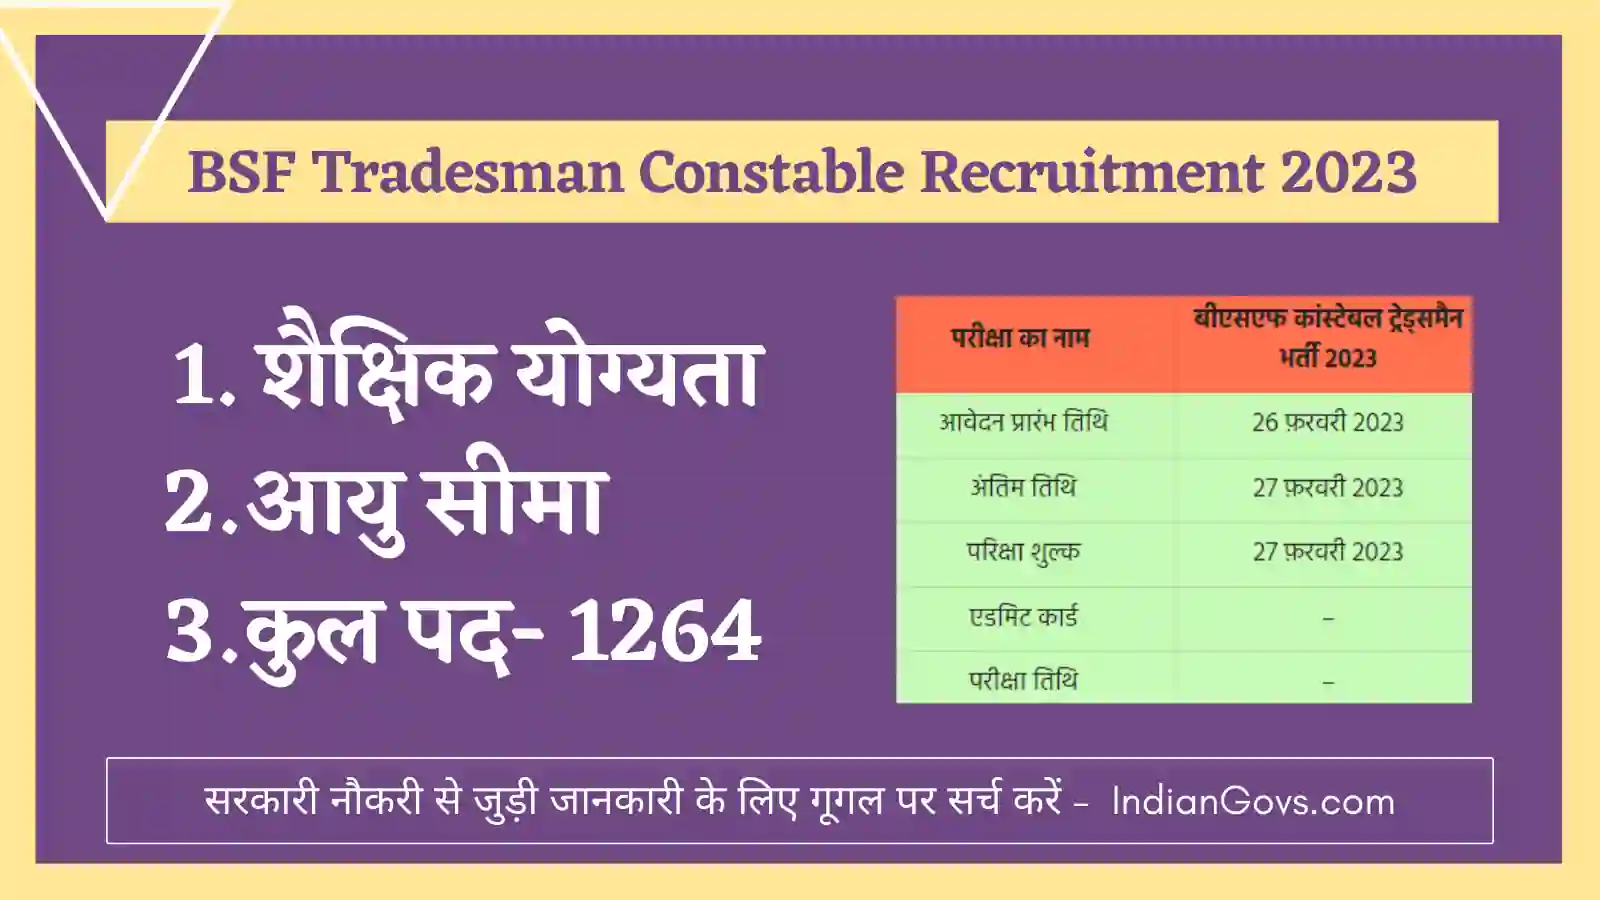 BSF Tradesman Constable Recruitment 2023